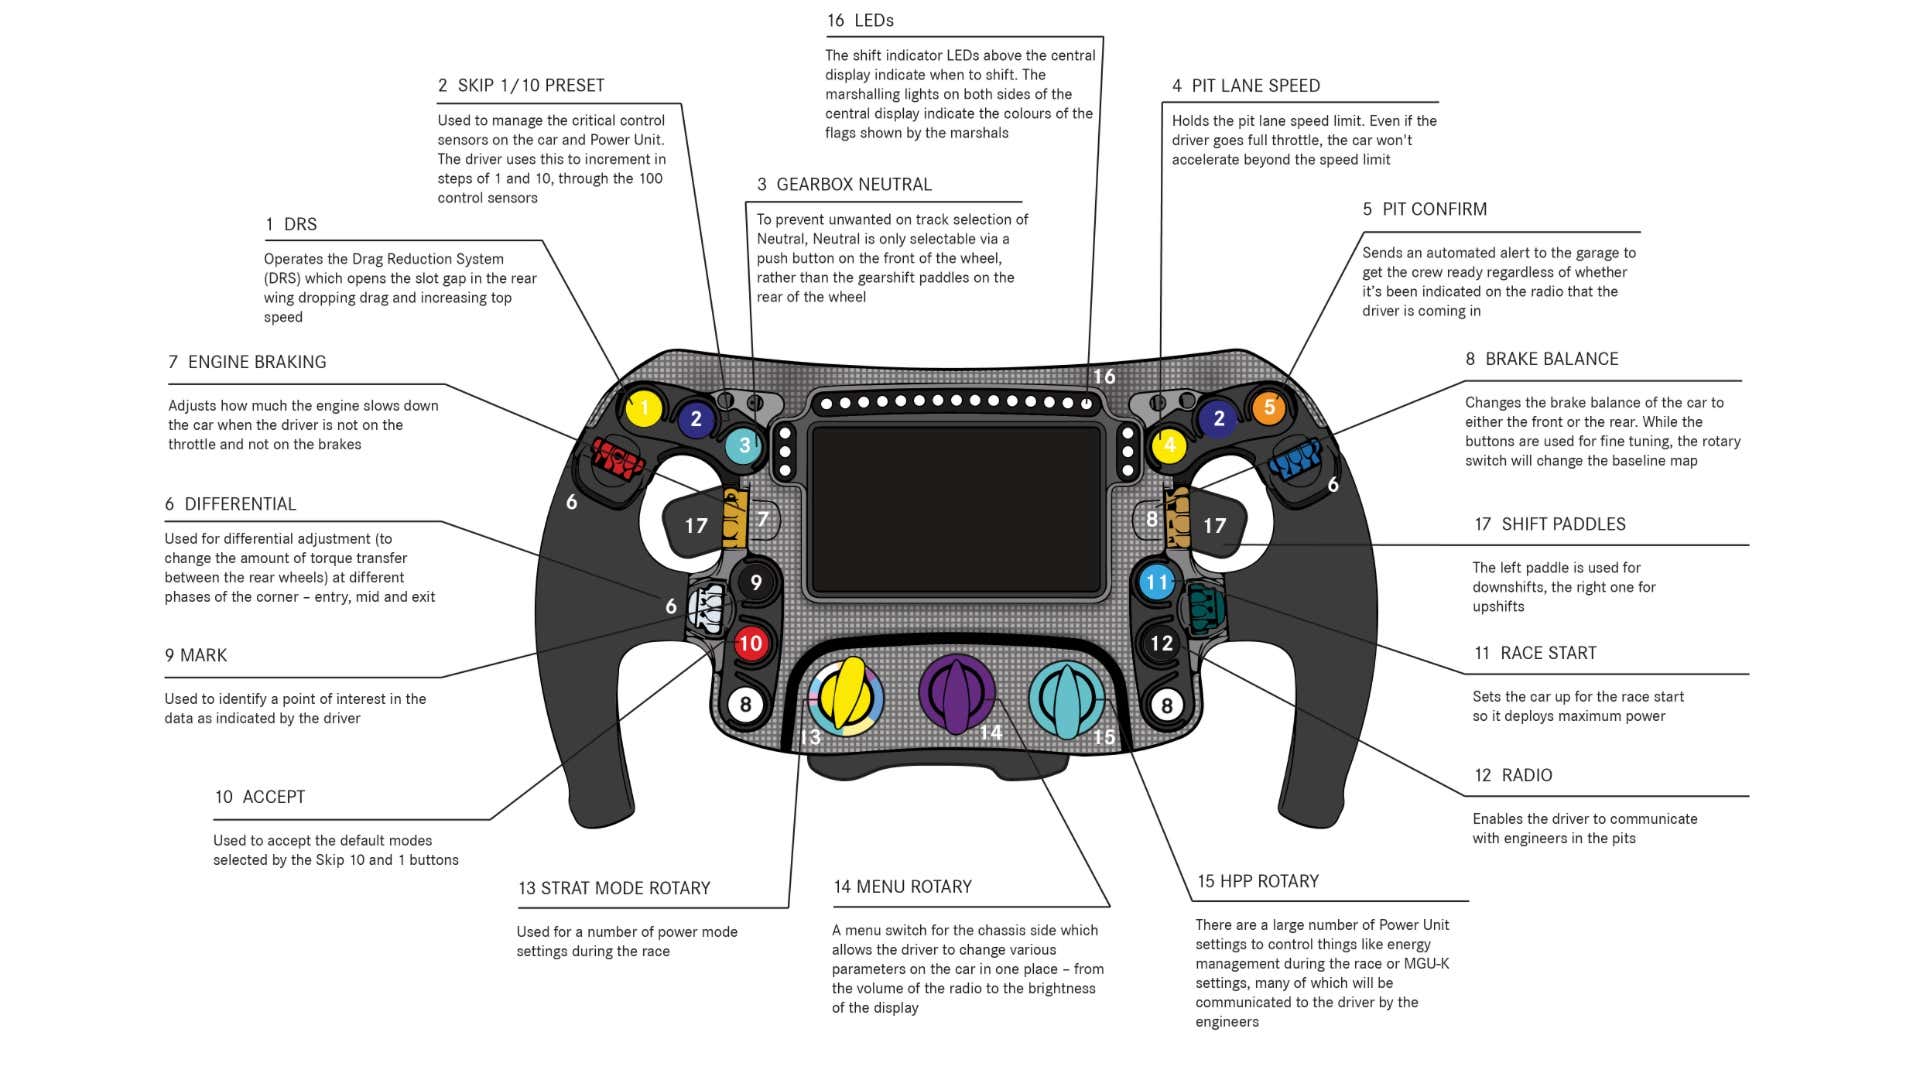 Mercedes' F1 steering wheel.